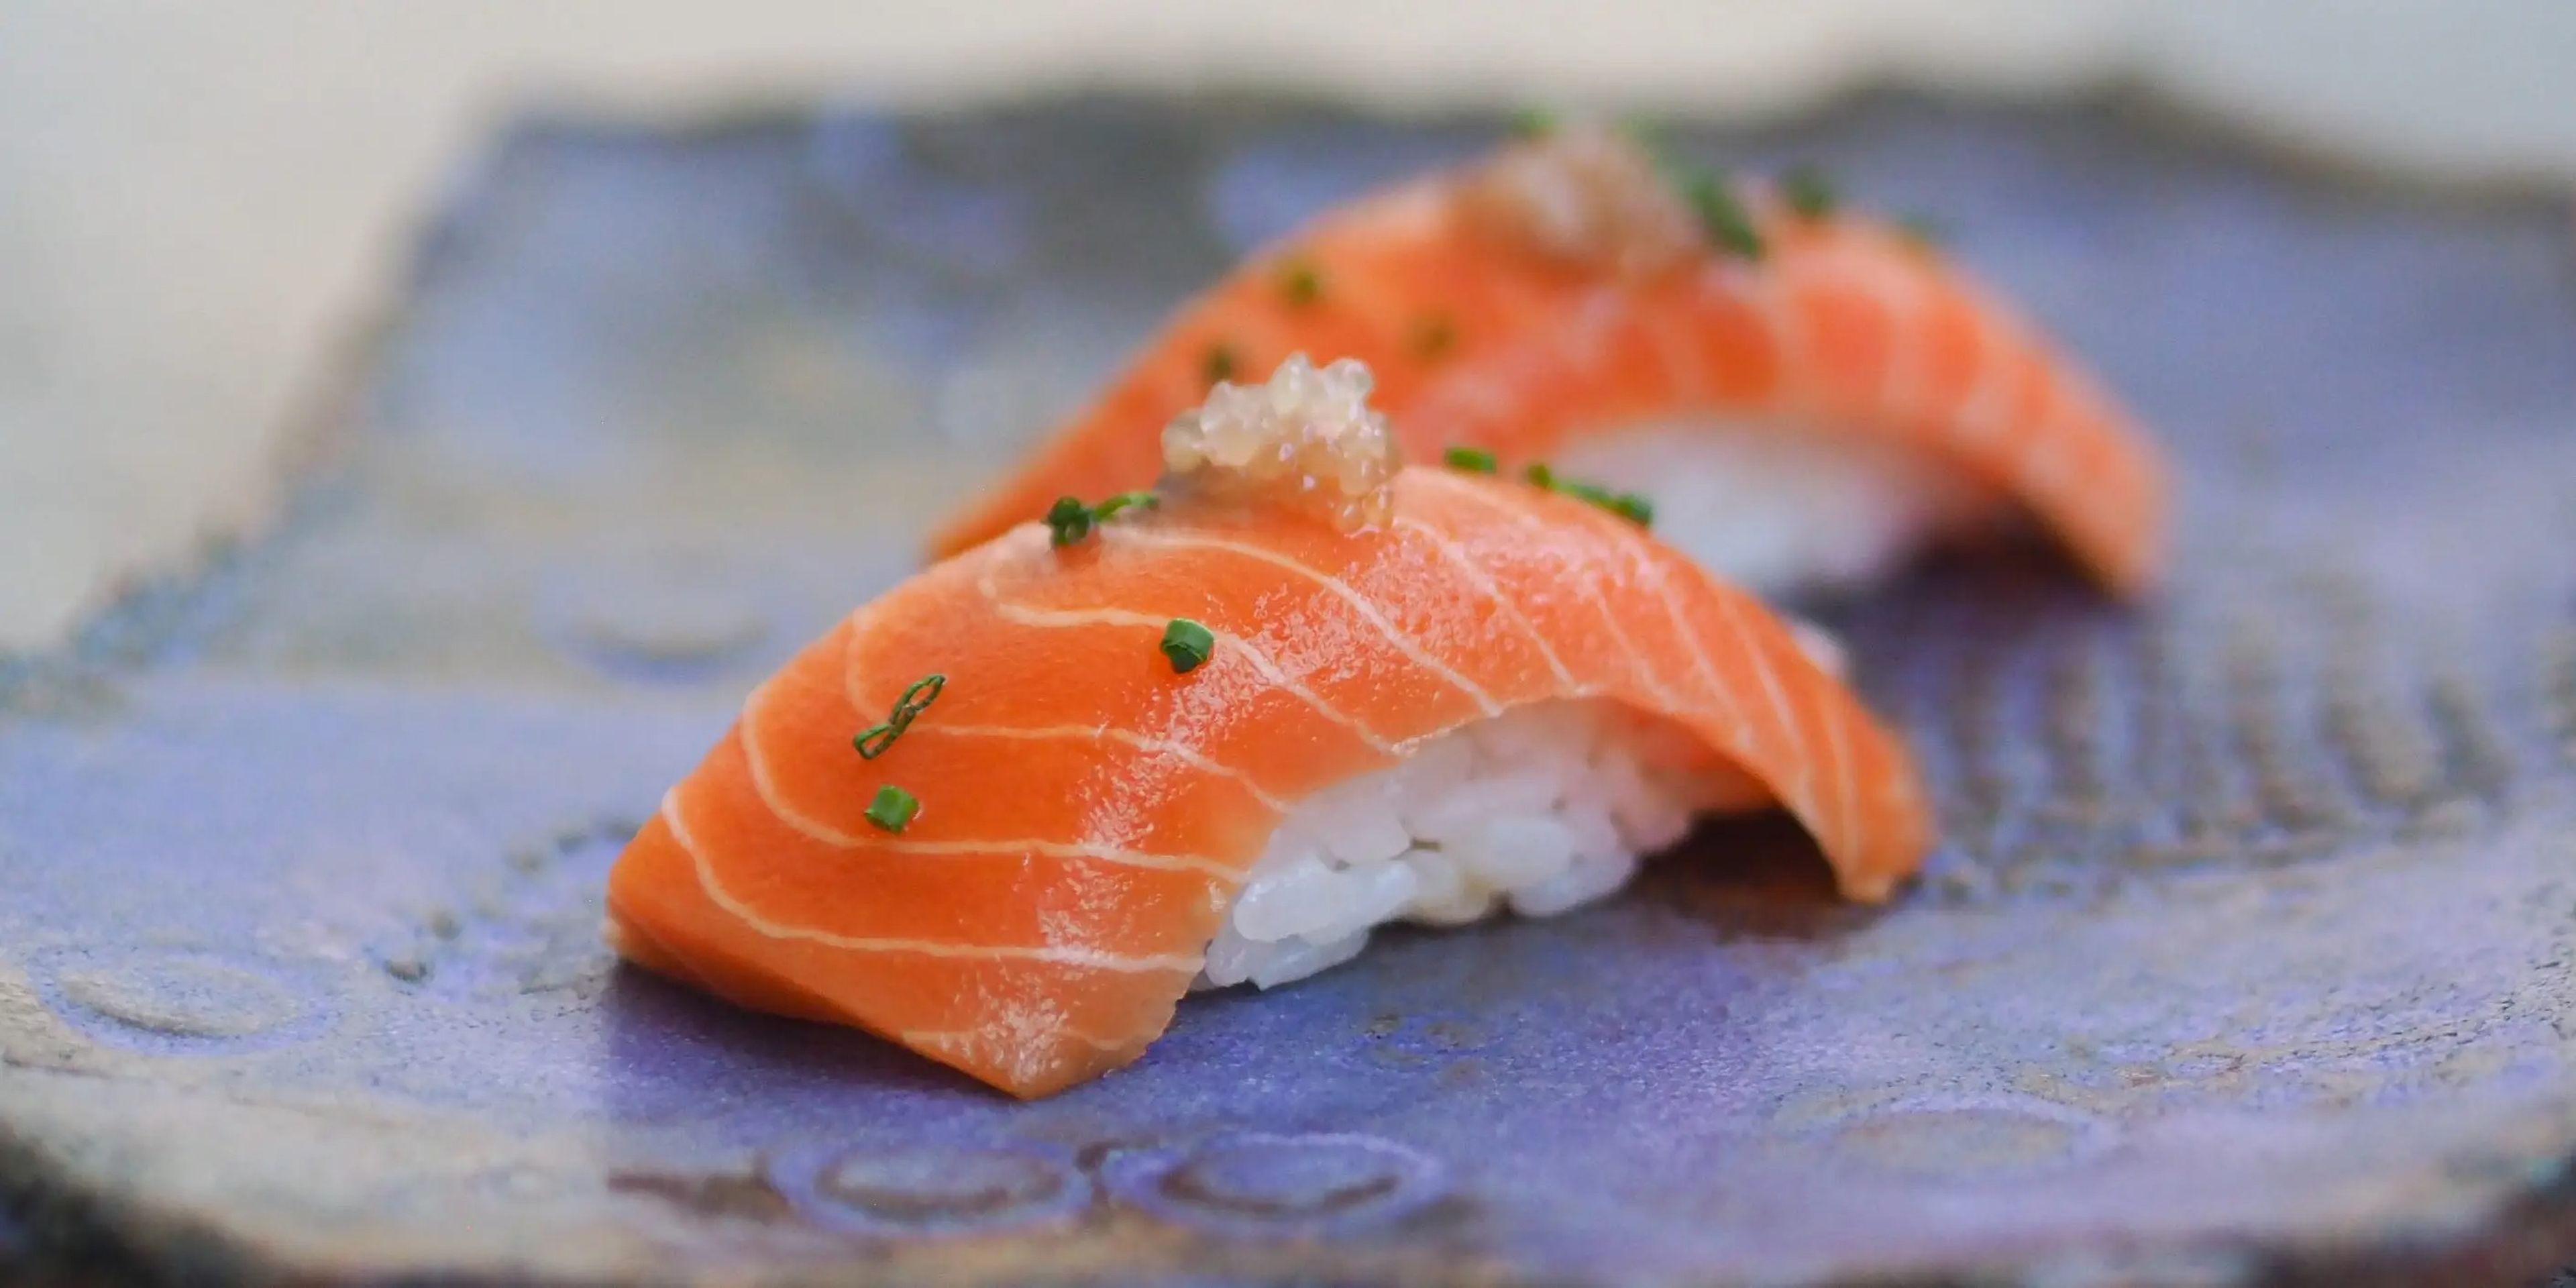 Puedes hornear salmón o comerlo crudo en sushi.